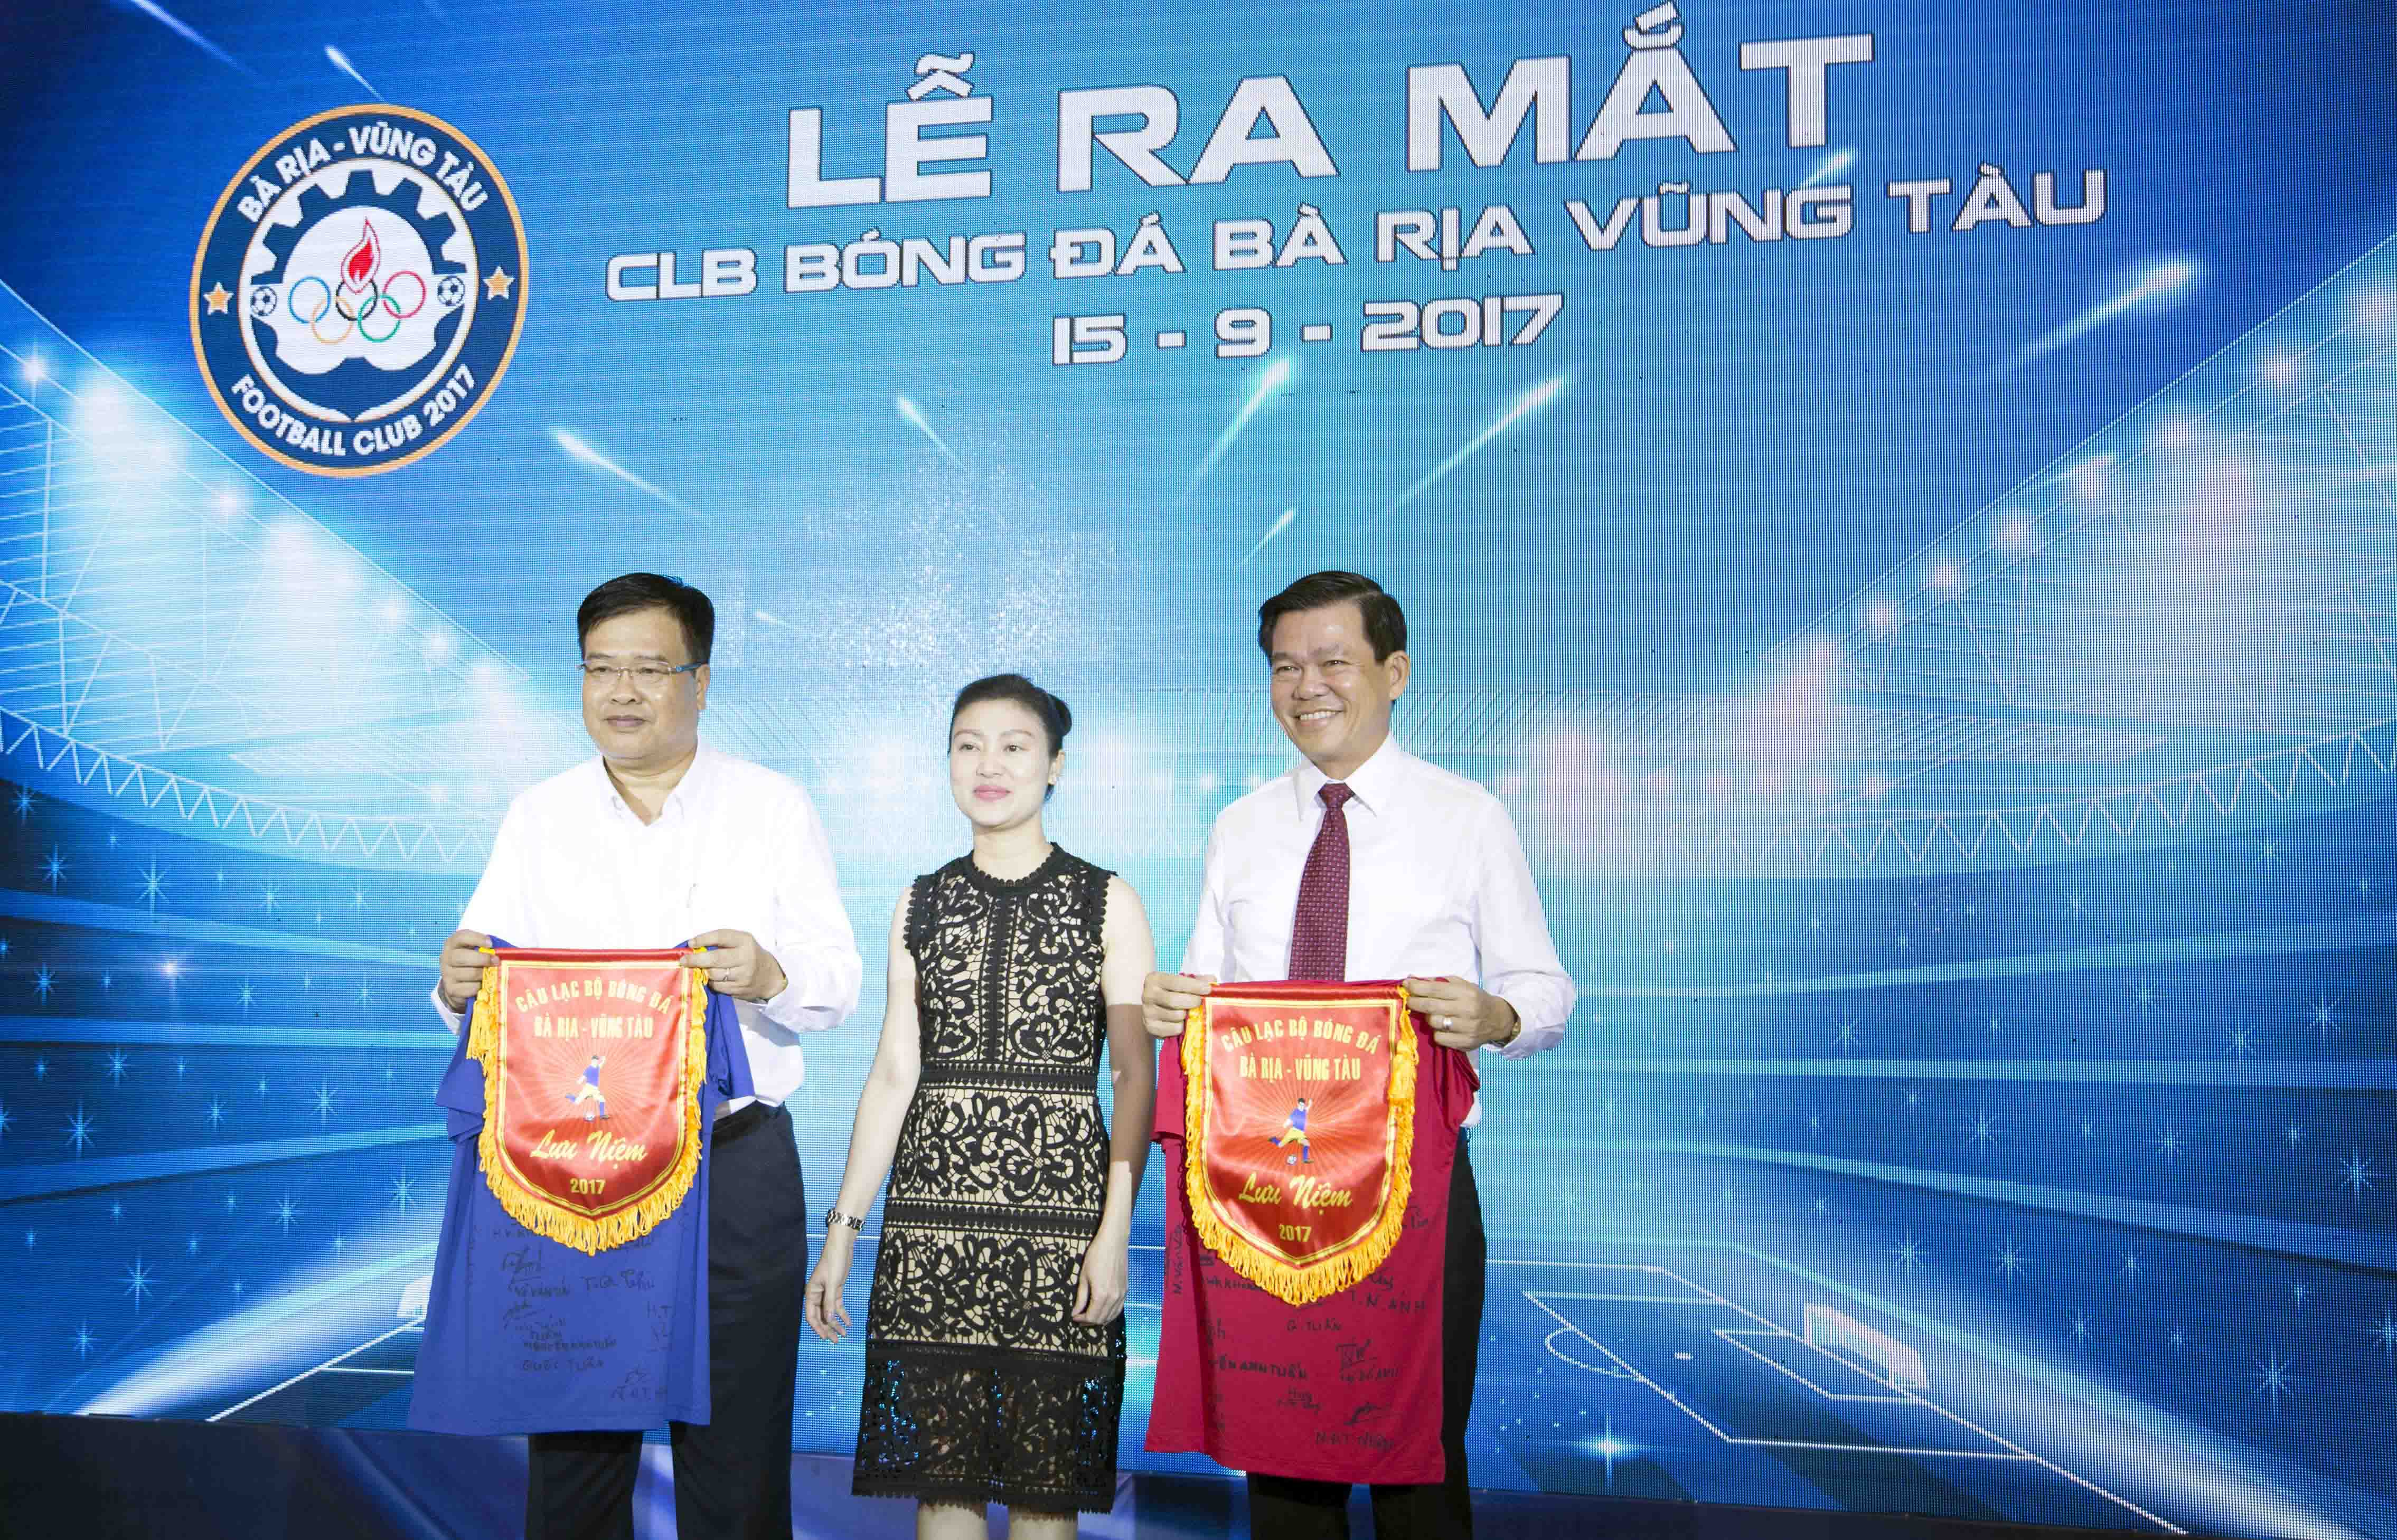 Bí thư tỉnh ủy tỉnh BRVT Nguyễn Hồng Lĩnh (phải) nhận áo lưu niệm từ CLB. Ảnh: Tuấn Vinh